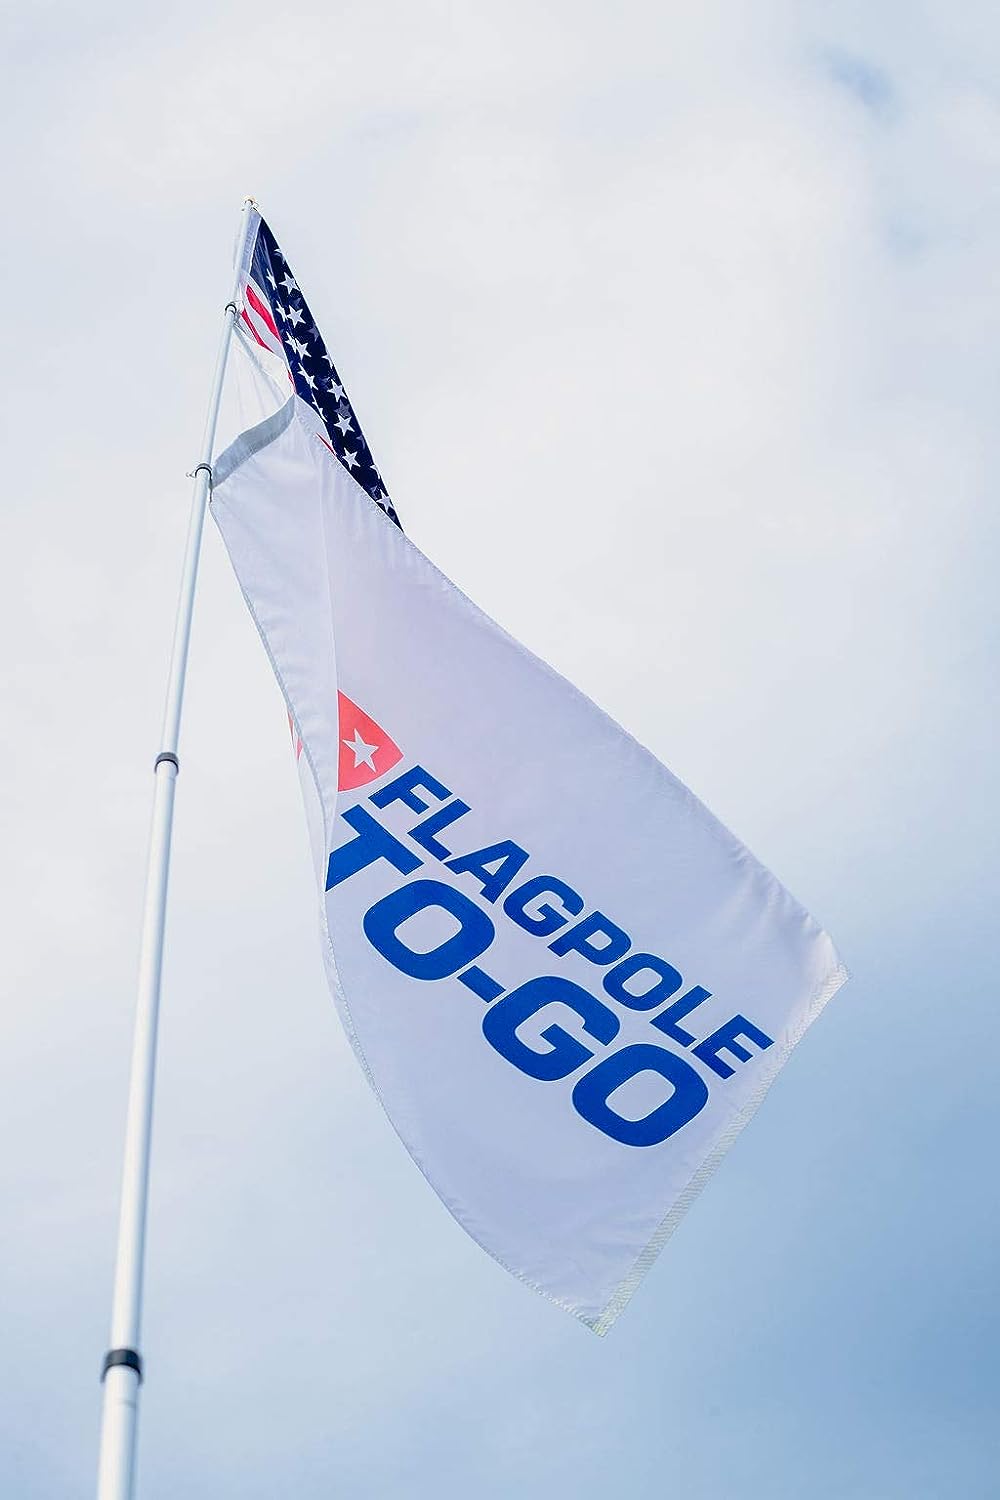 extendable flag pole with flagpole to-go flag